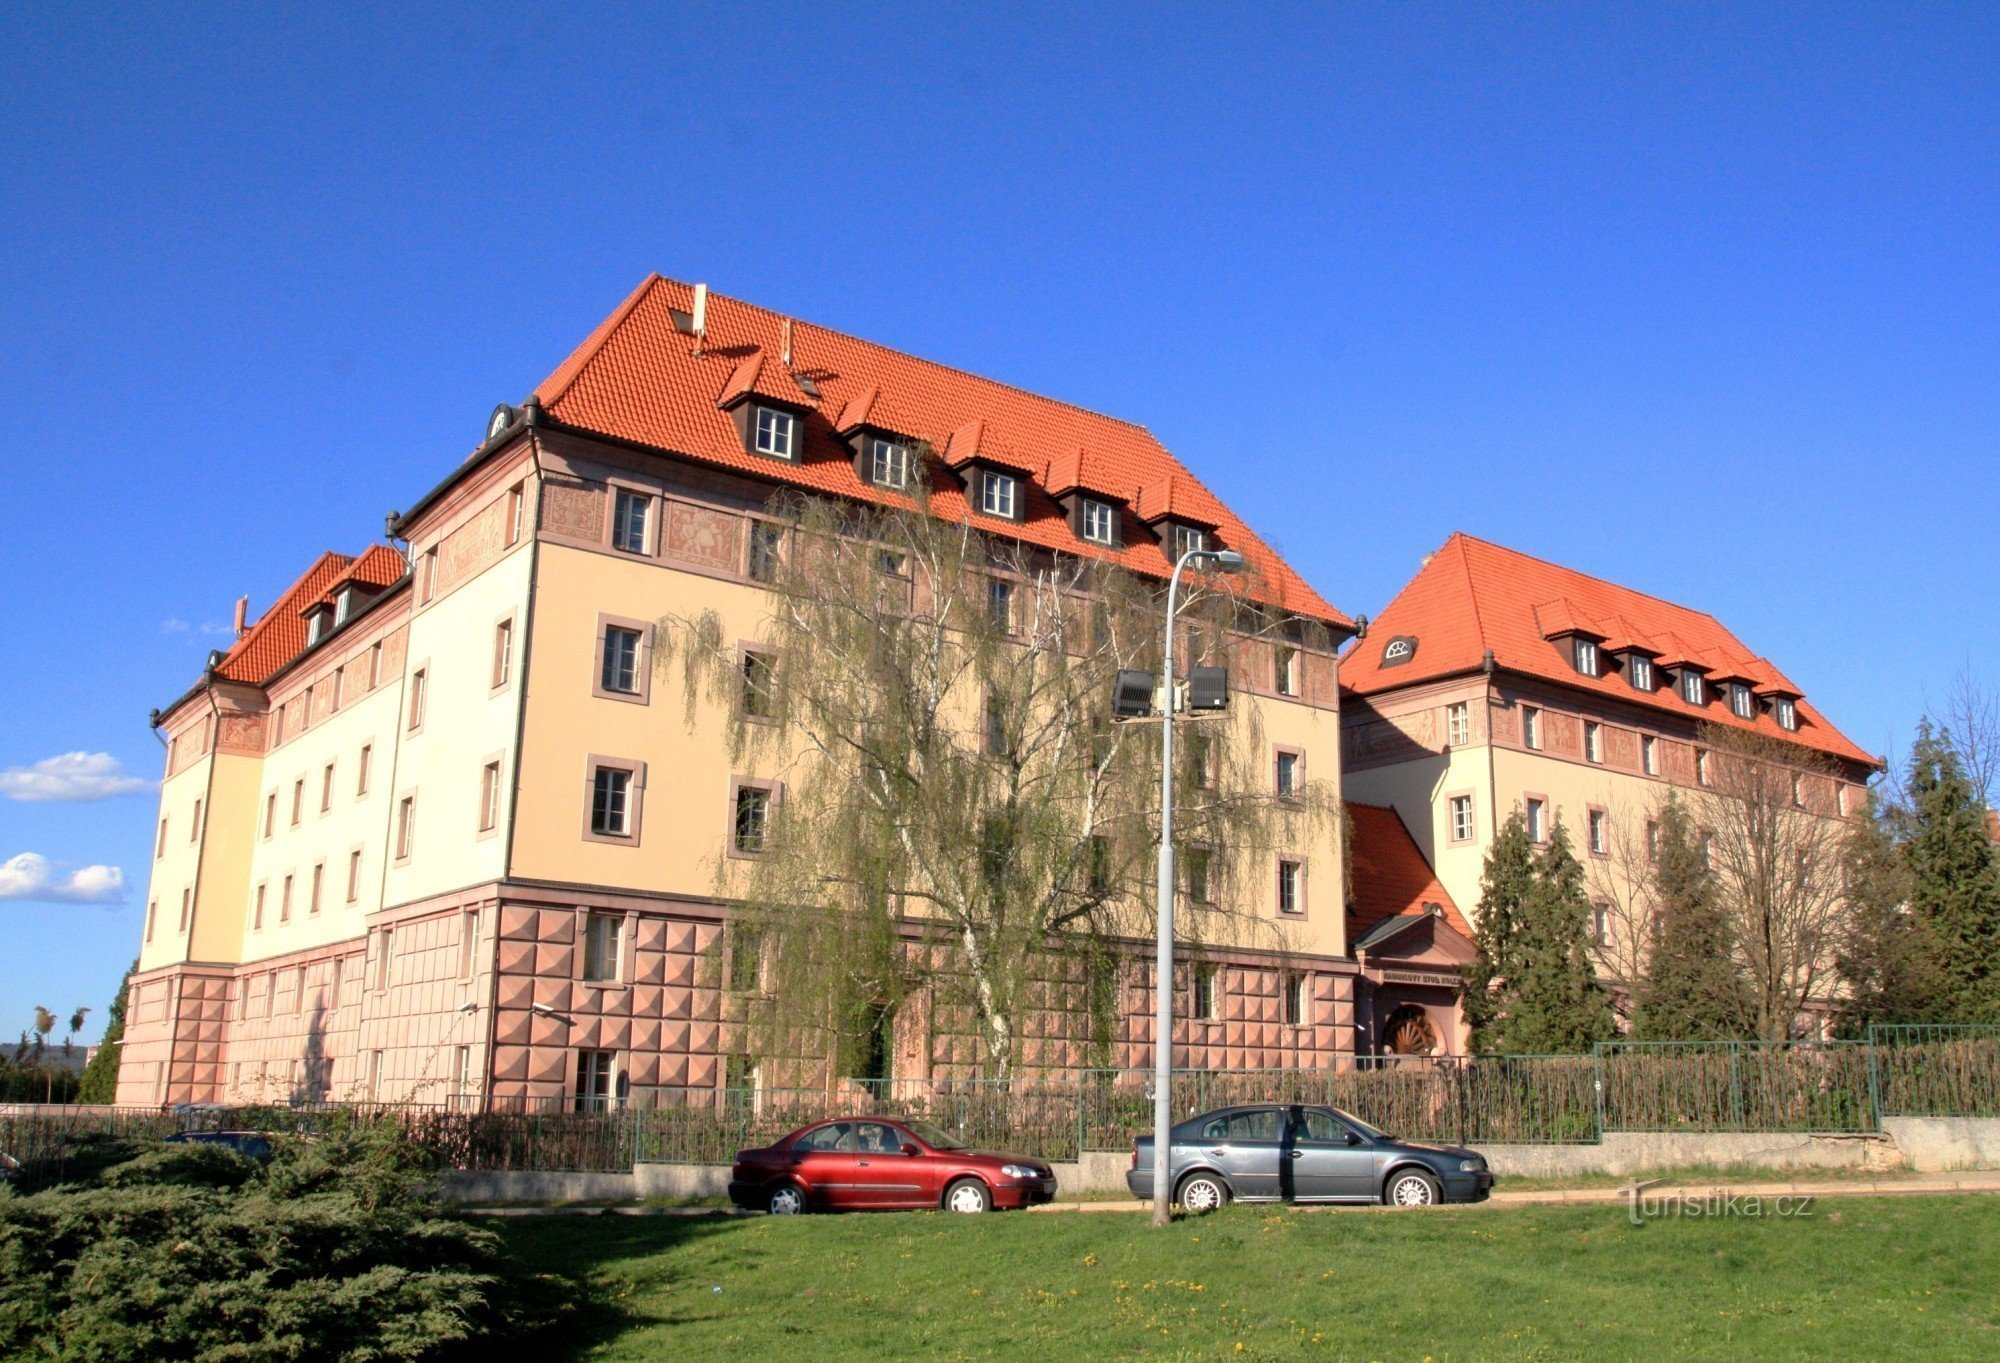 布尔诺 - Kounic 宿舍